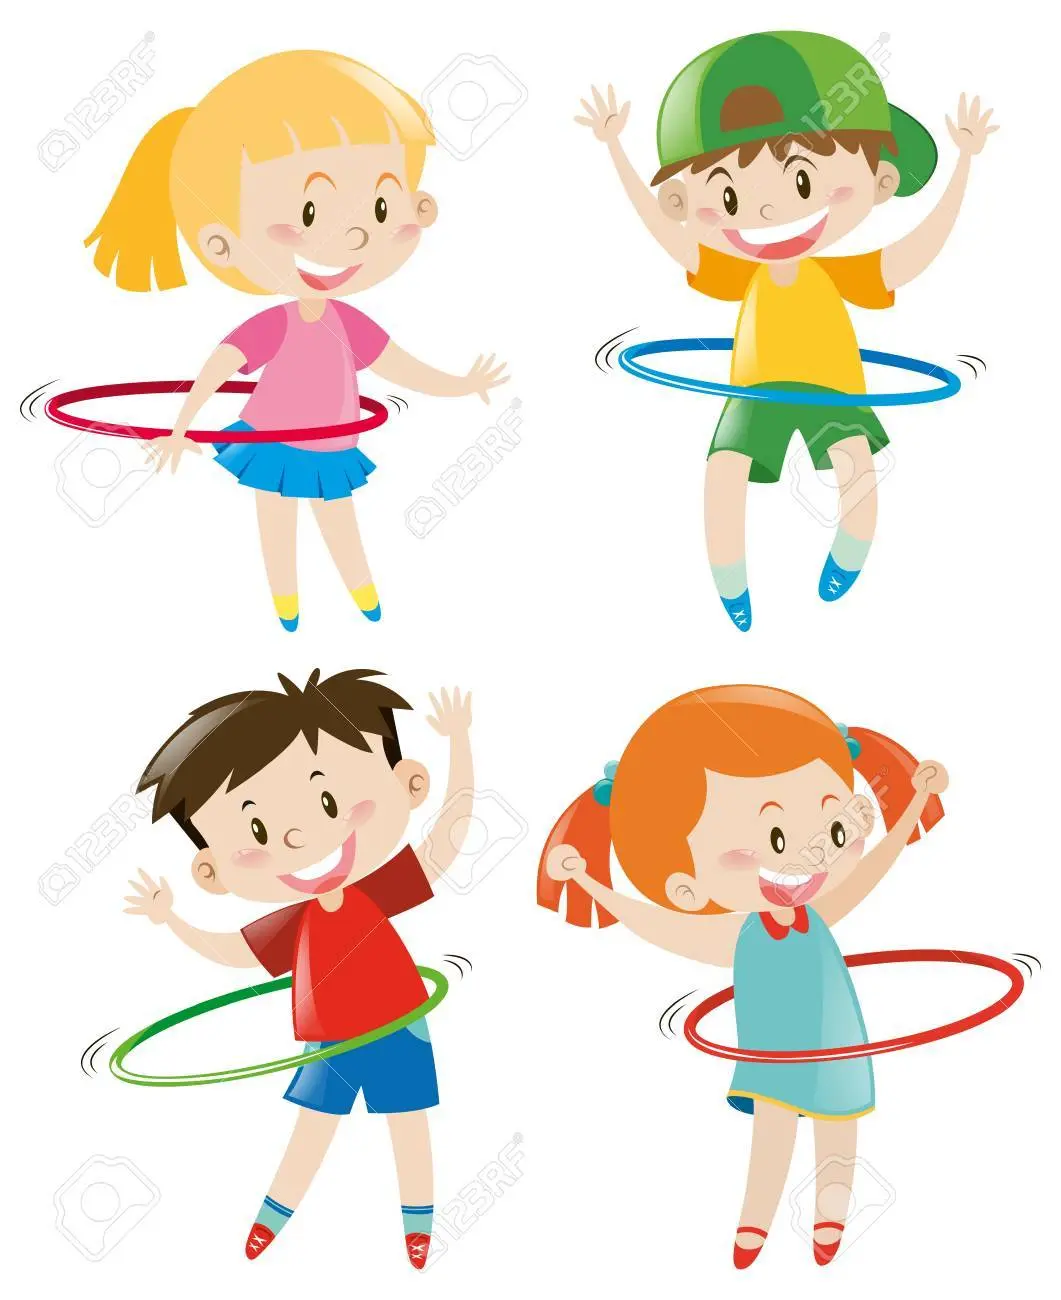 juegos con aros animados - Que se trabaja con los aros en los niños